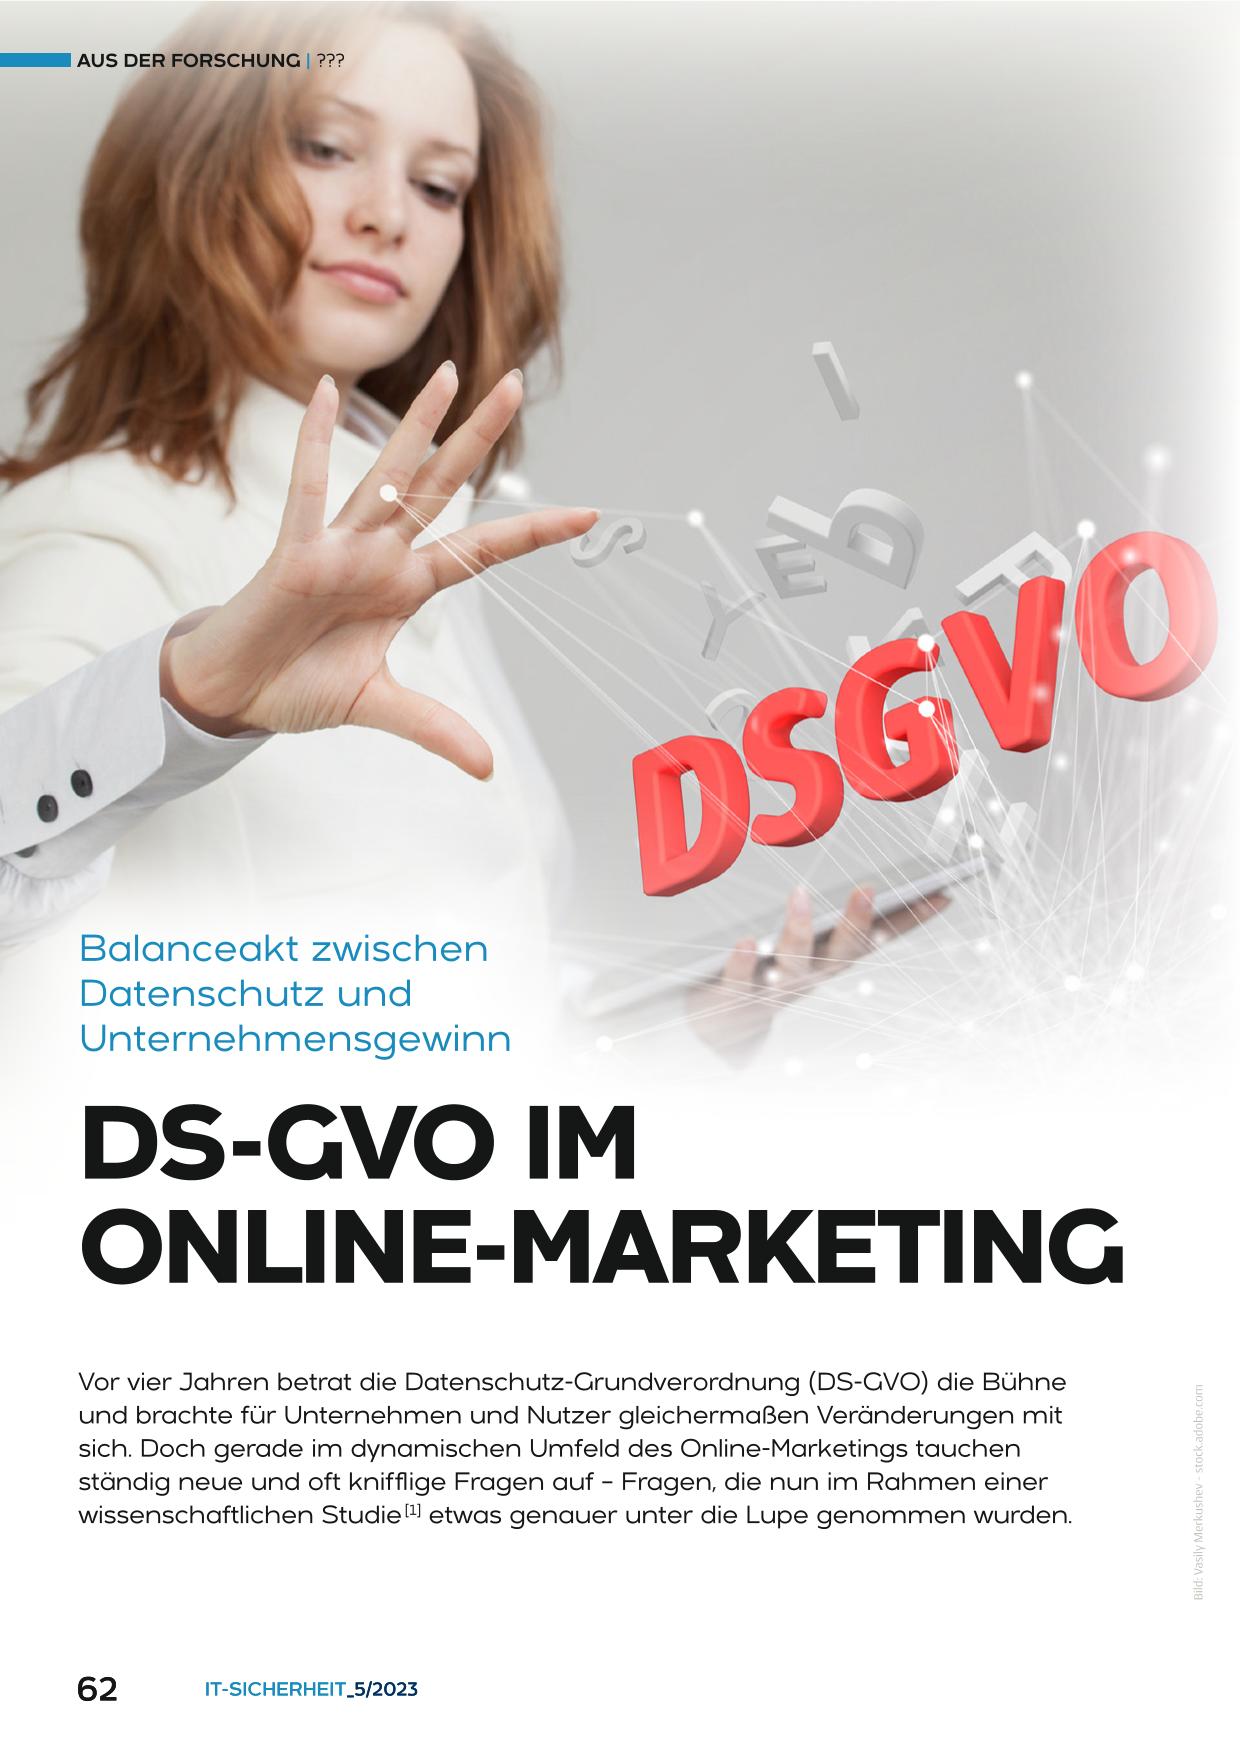 DS-GVO im Online-Marketing